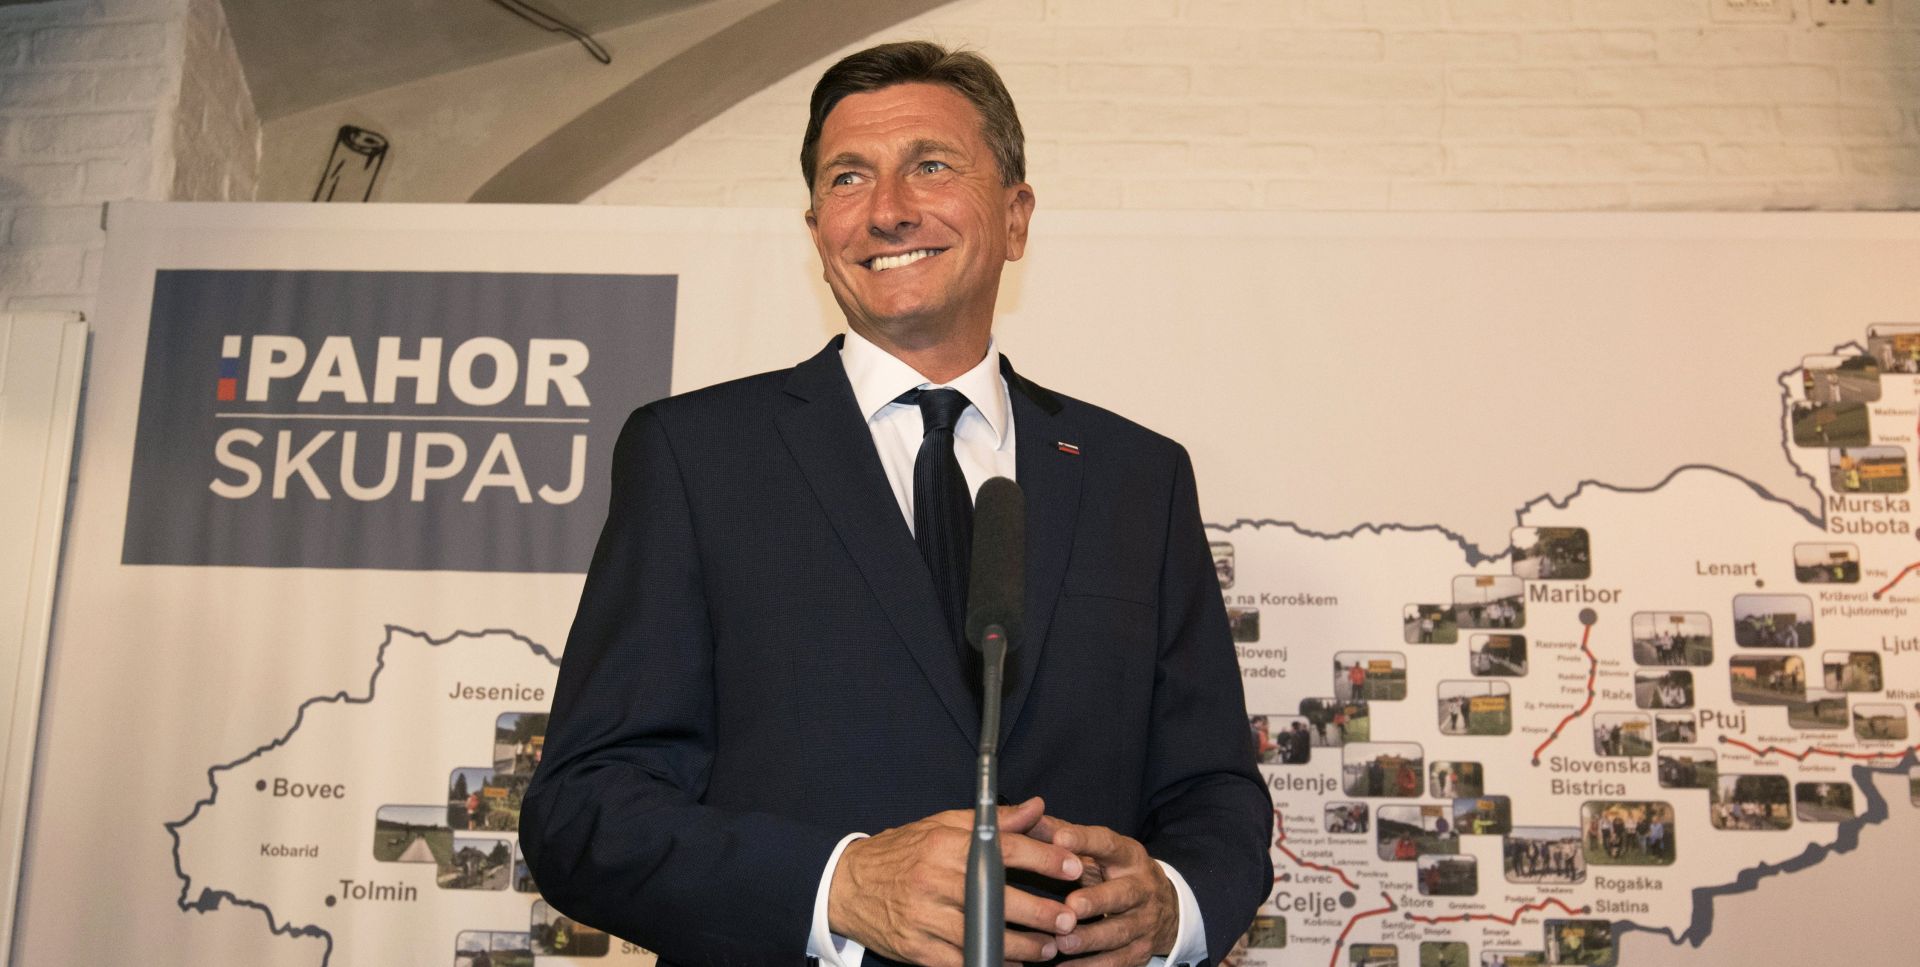 IZBORI U SLOVENIJI Pahoru najviše glasova, drugi izborni krug 12. studenoga